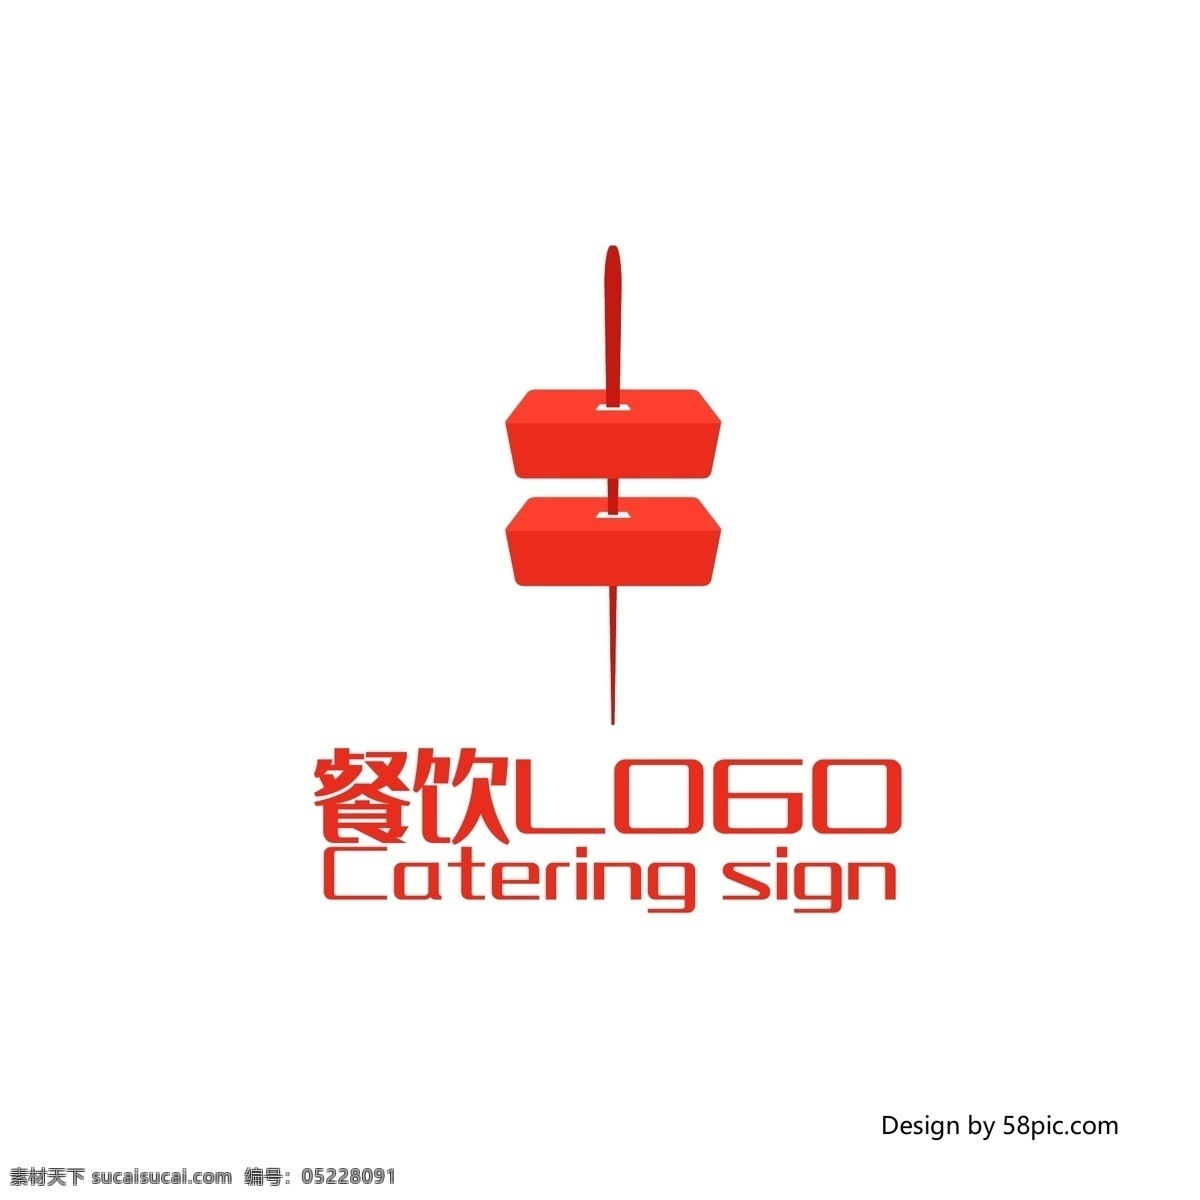 原创 创意 肉 串串 串 香 餐饮 烧烤 logo 标志 可商用 字体设计 肉串 串串香 餐厅 简约